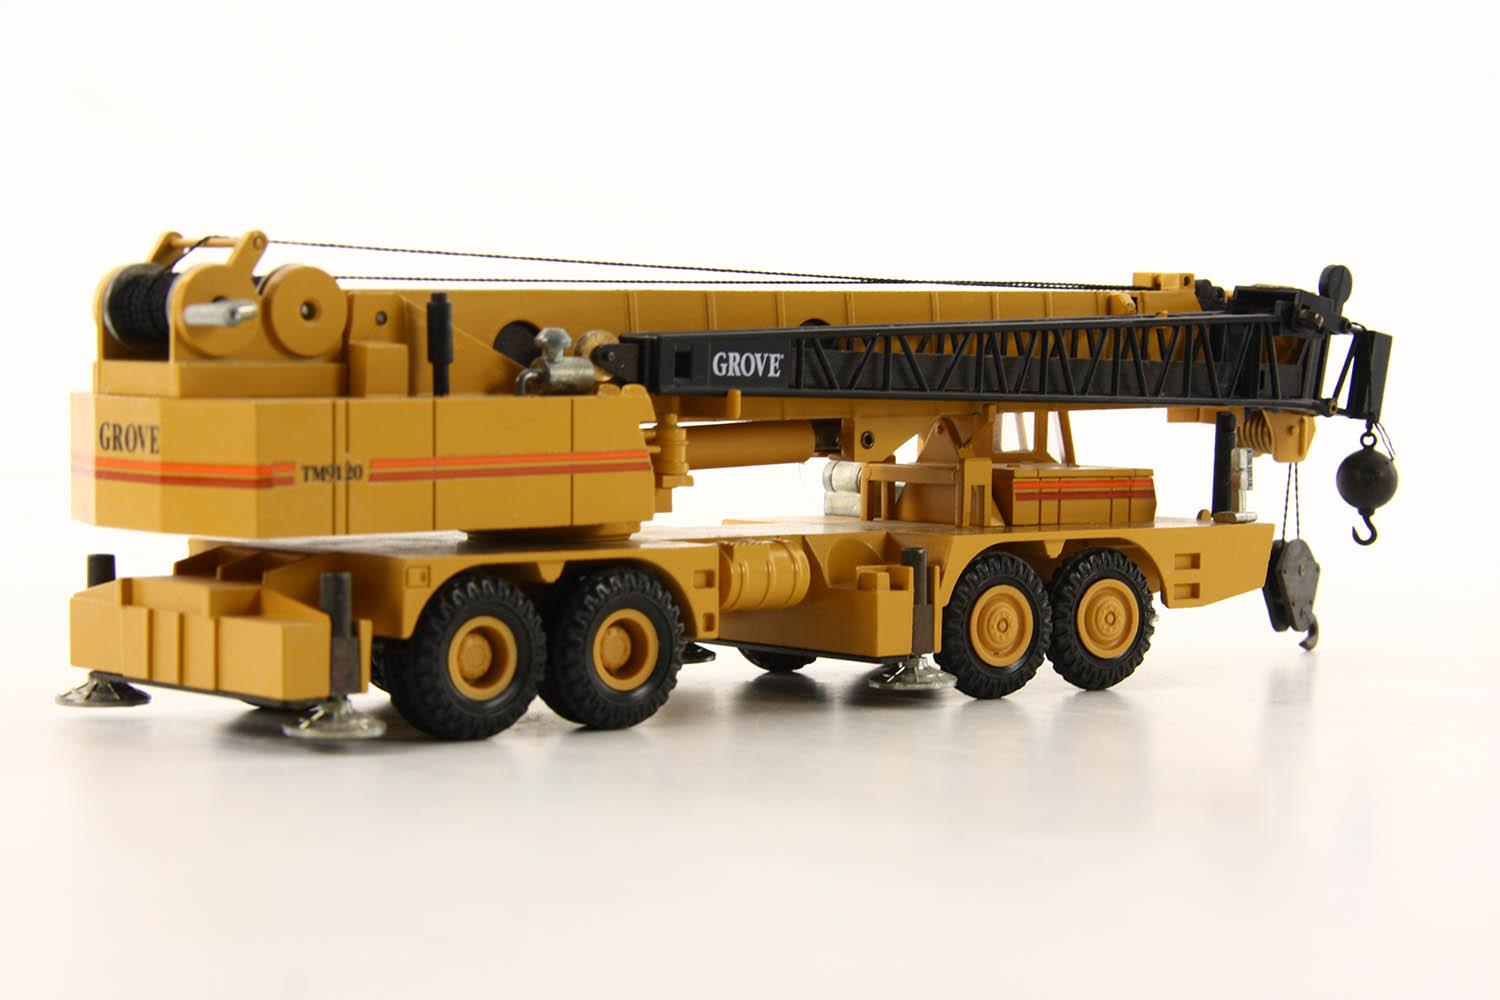 Grove TM9120 4-Axle Mobile Crane